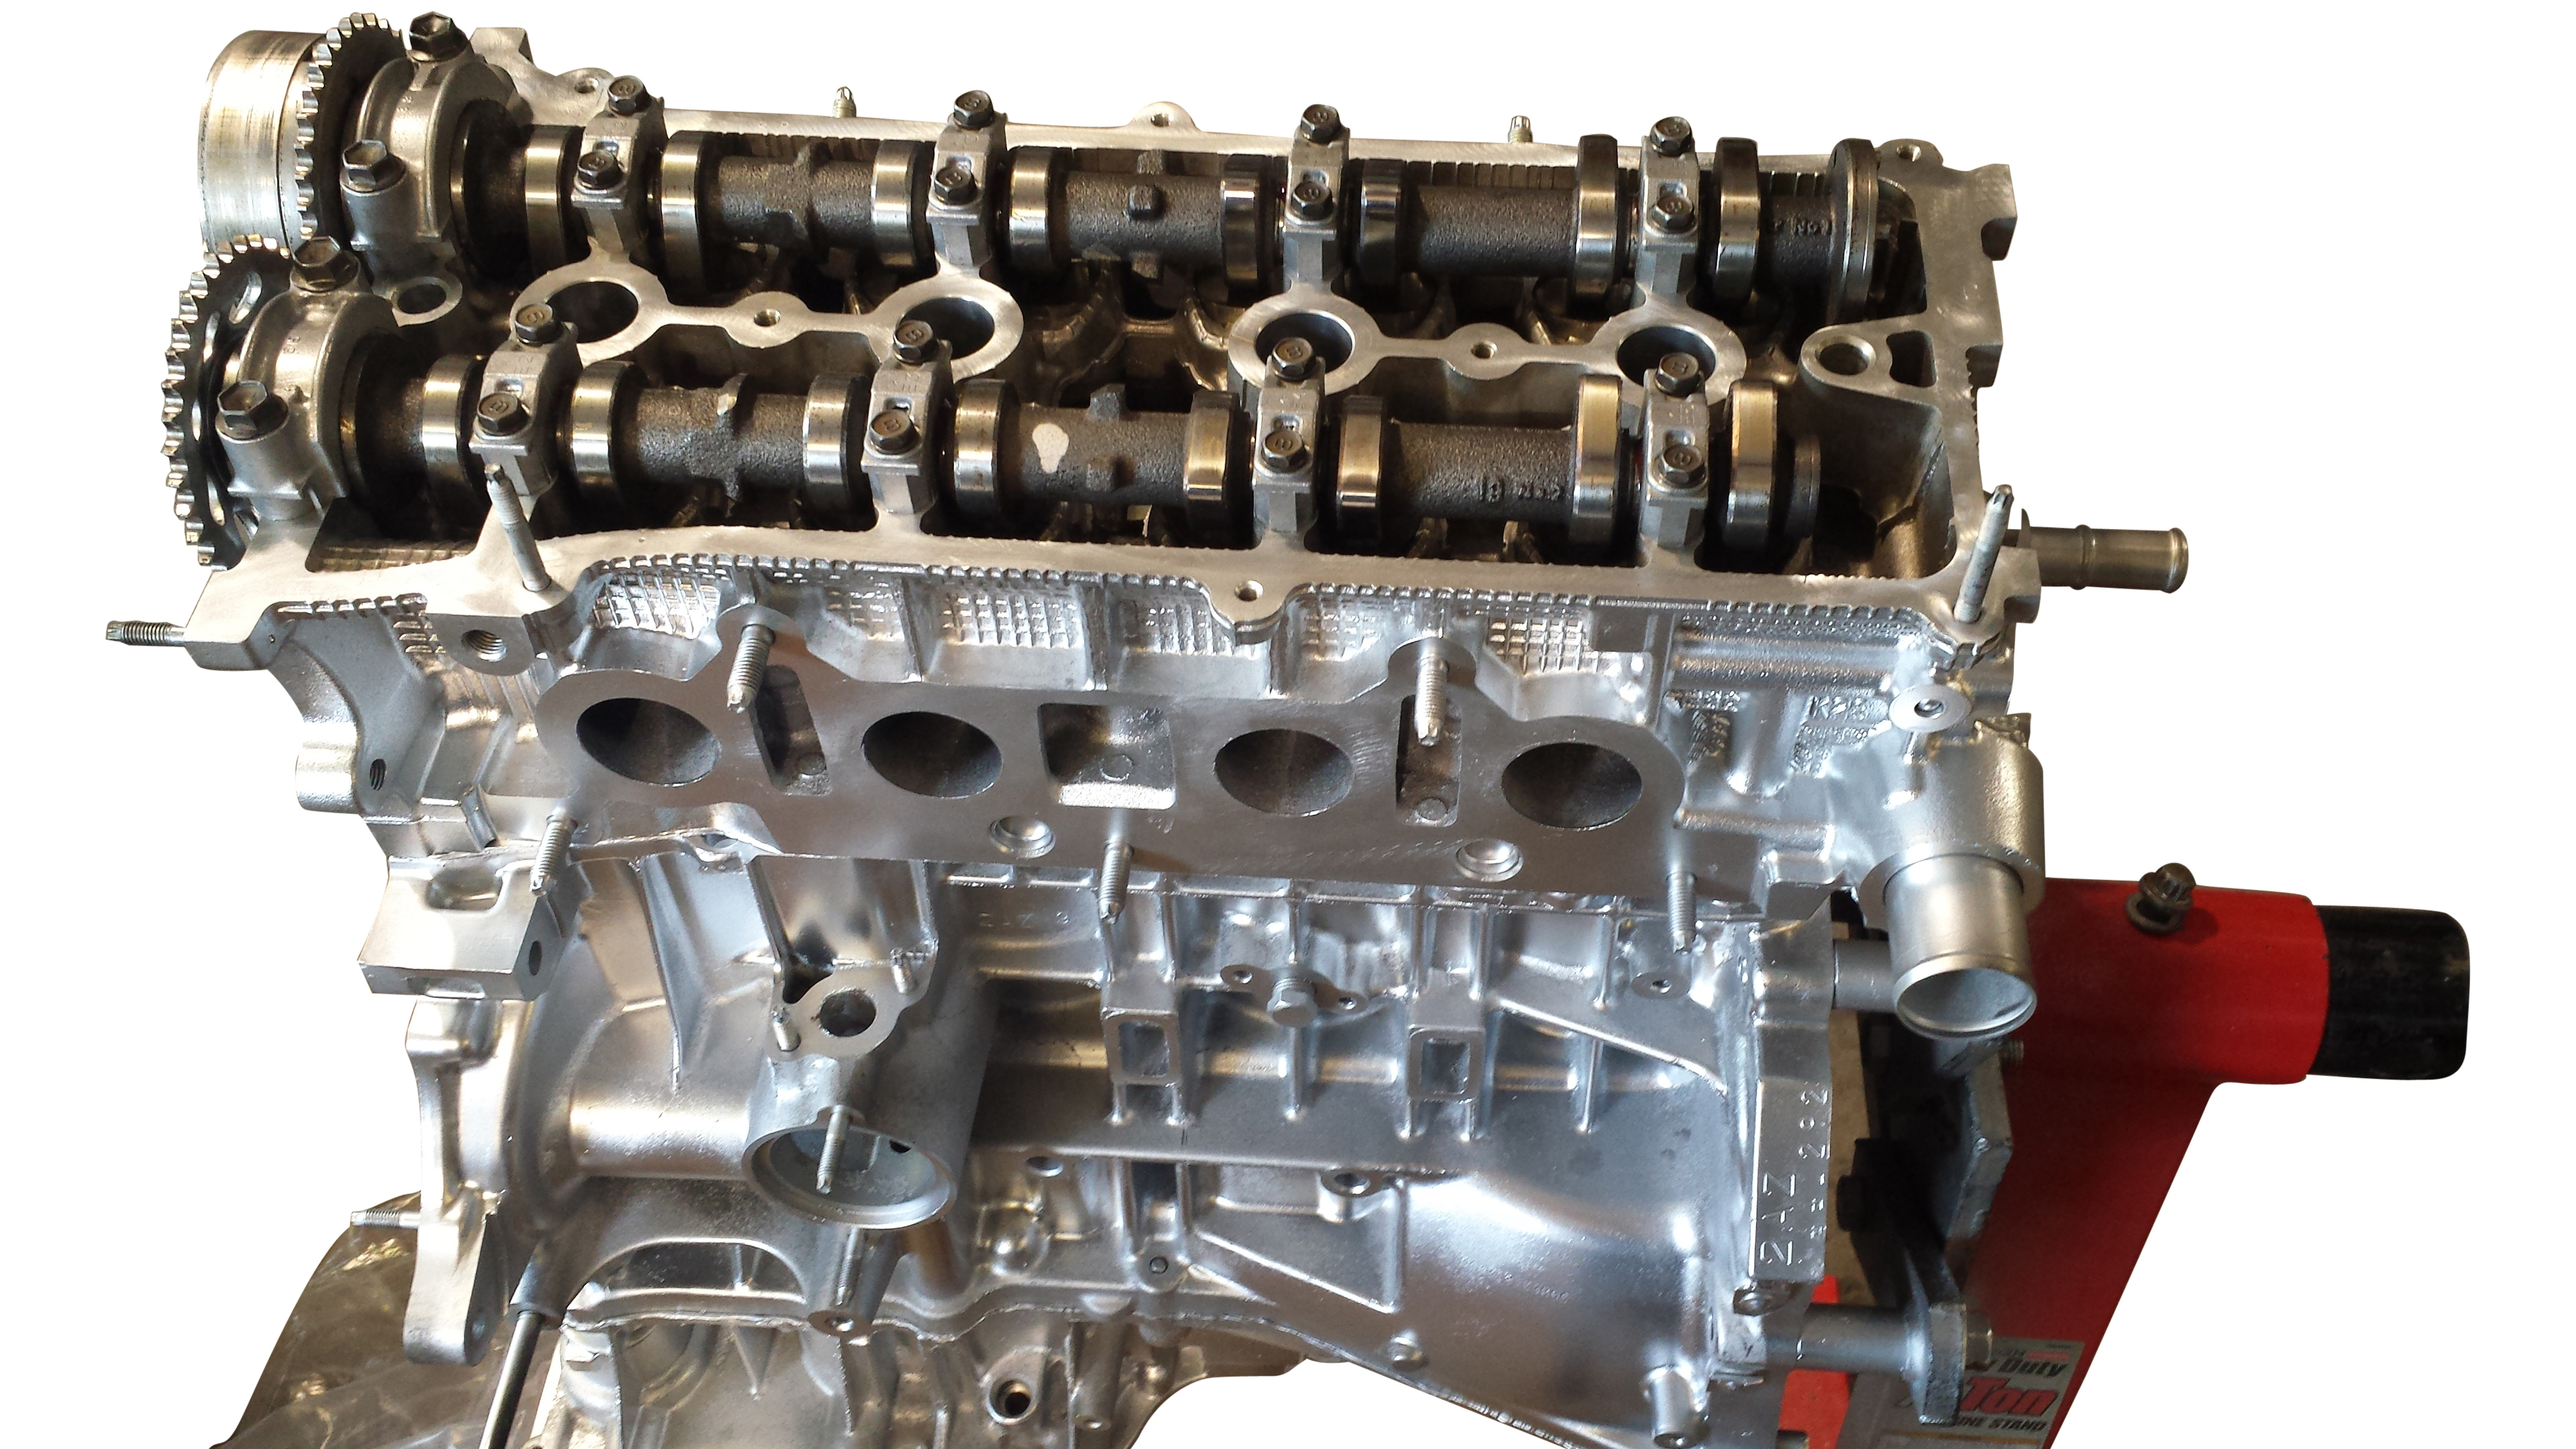 Rebuilt Toyota 2AZ FE engine for RX300